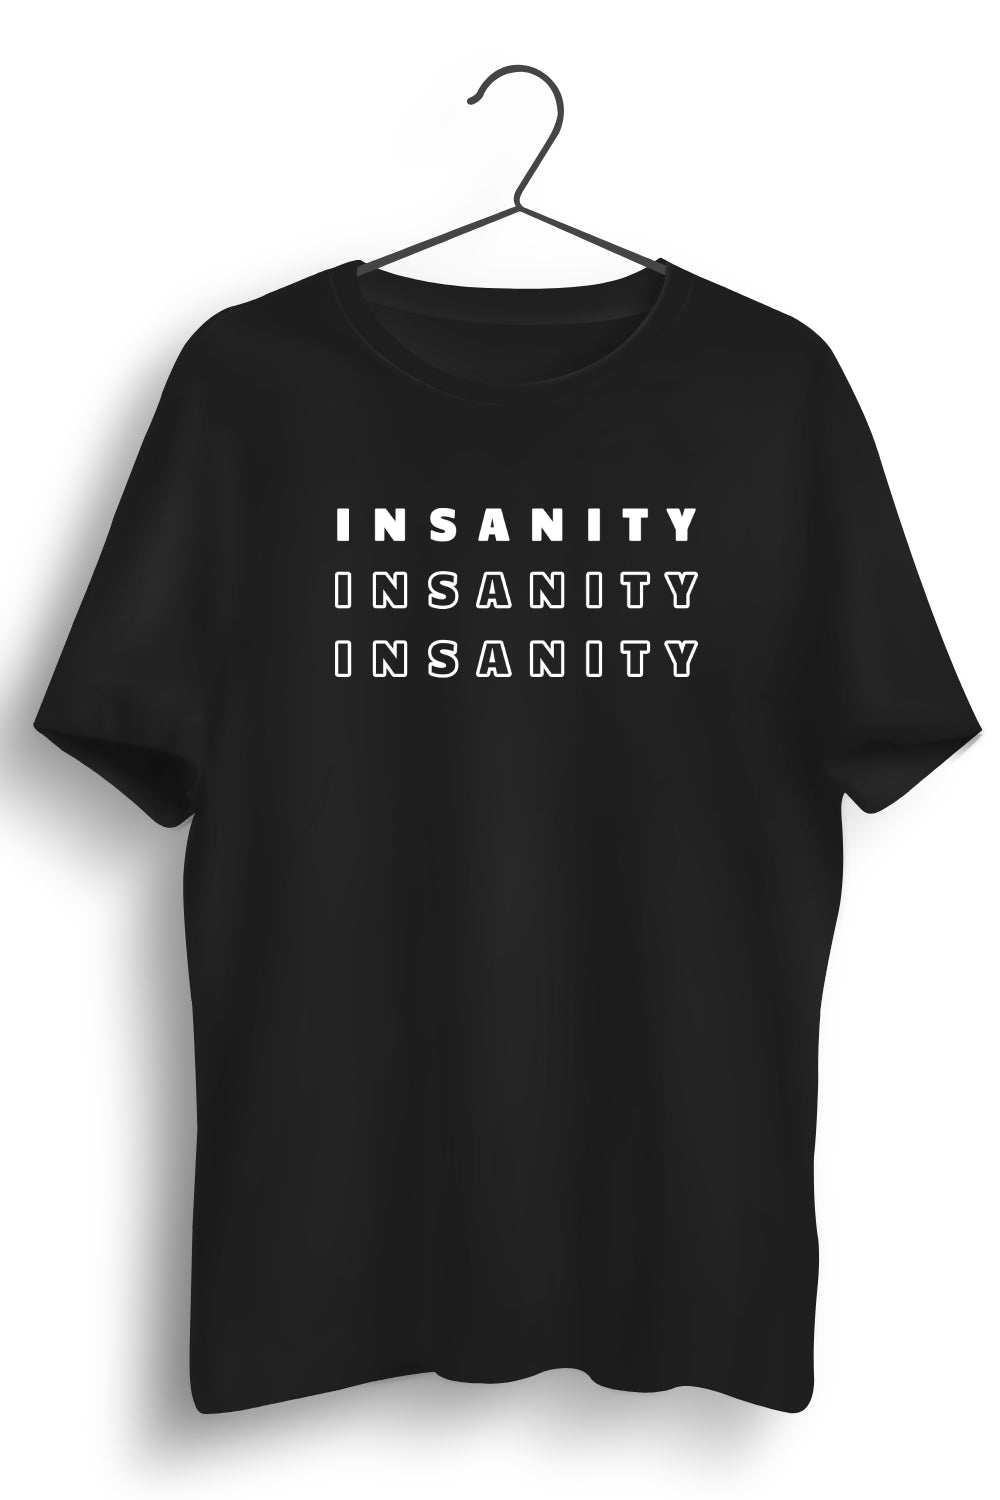 Insanity Printed Black Tshirt